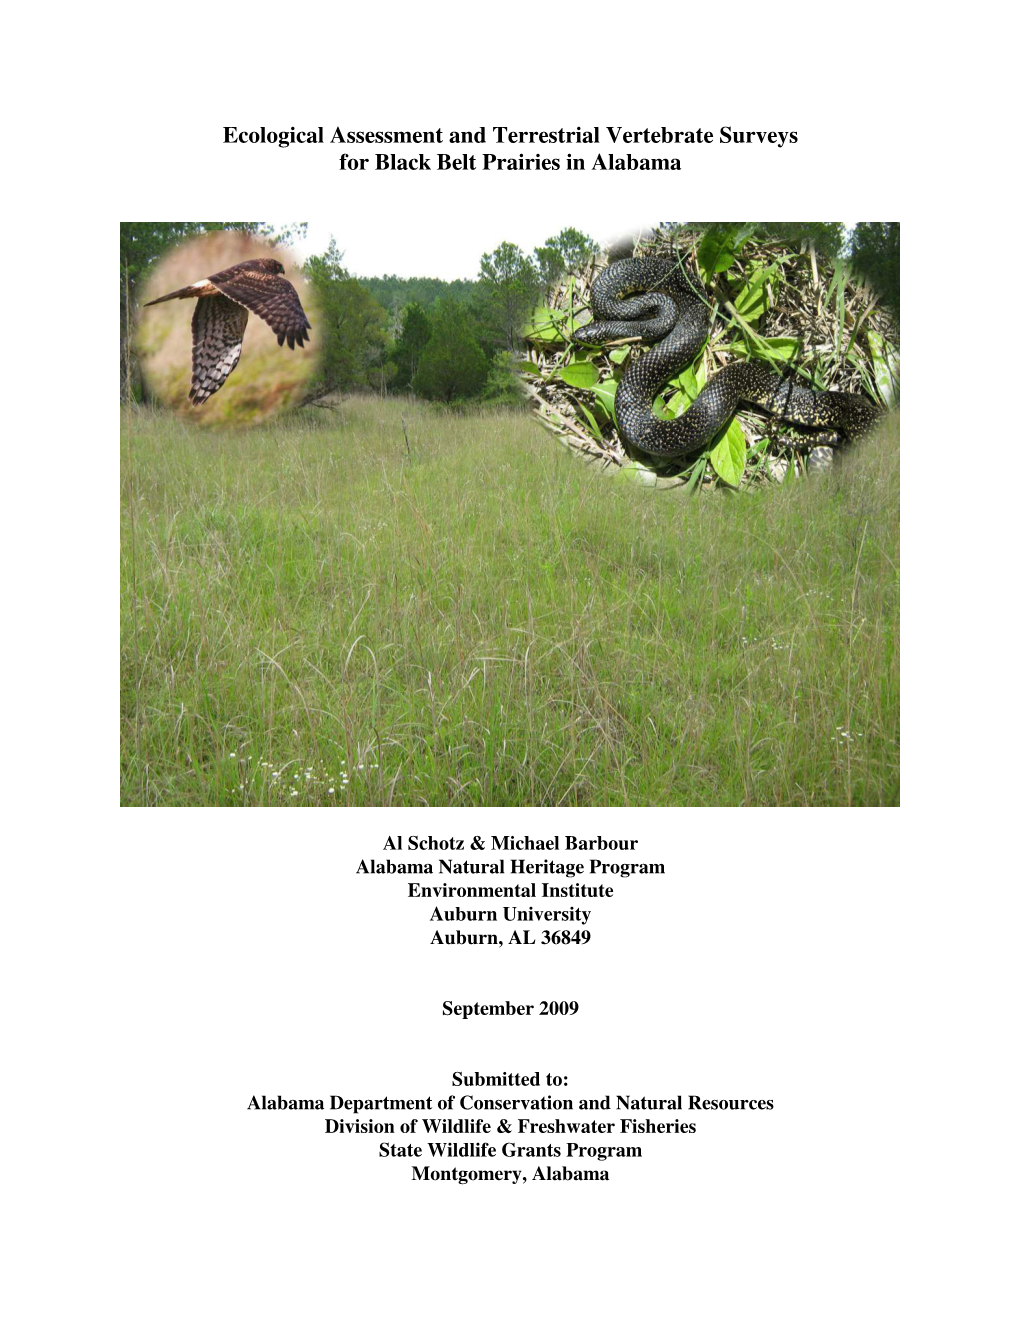 Ecological Assessment and Terrestrial Vertebrate Surveys for Black Belt Prairies in Alabama